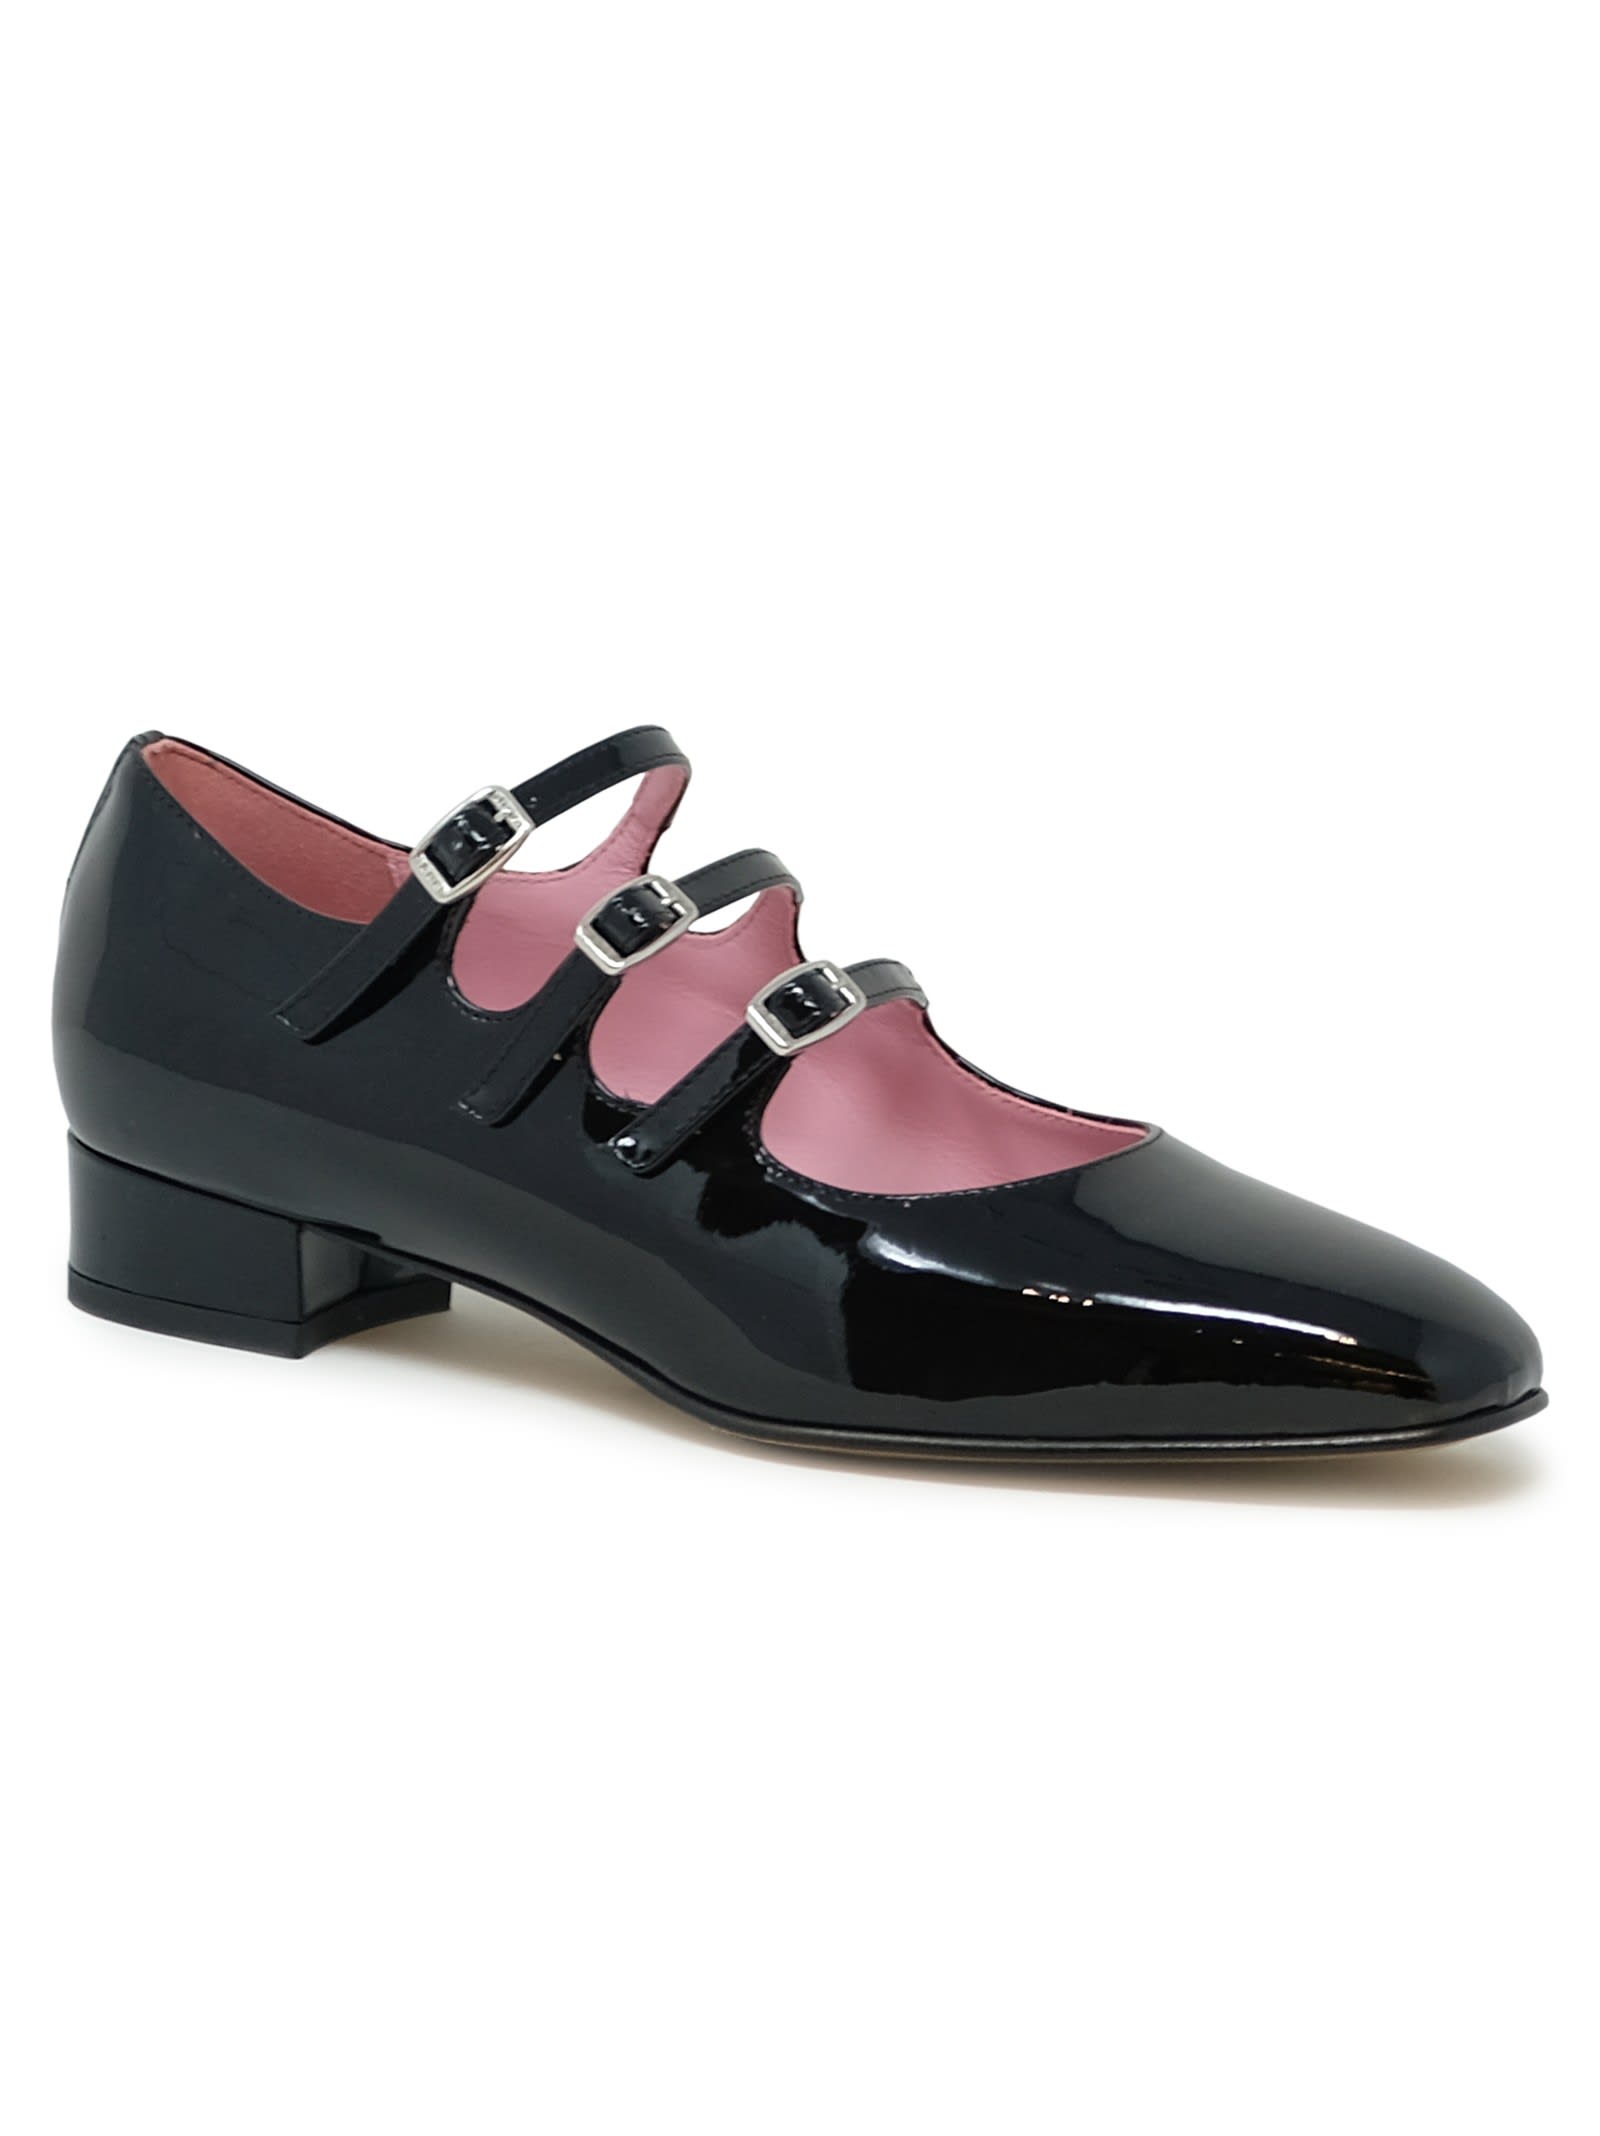 Shop Carel Paris Black Patent Leather Ballet Shoes